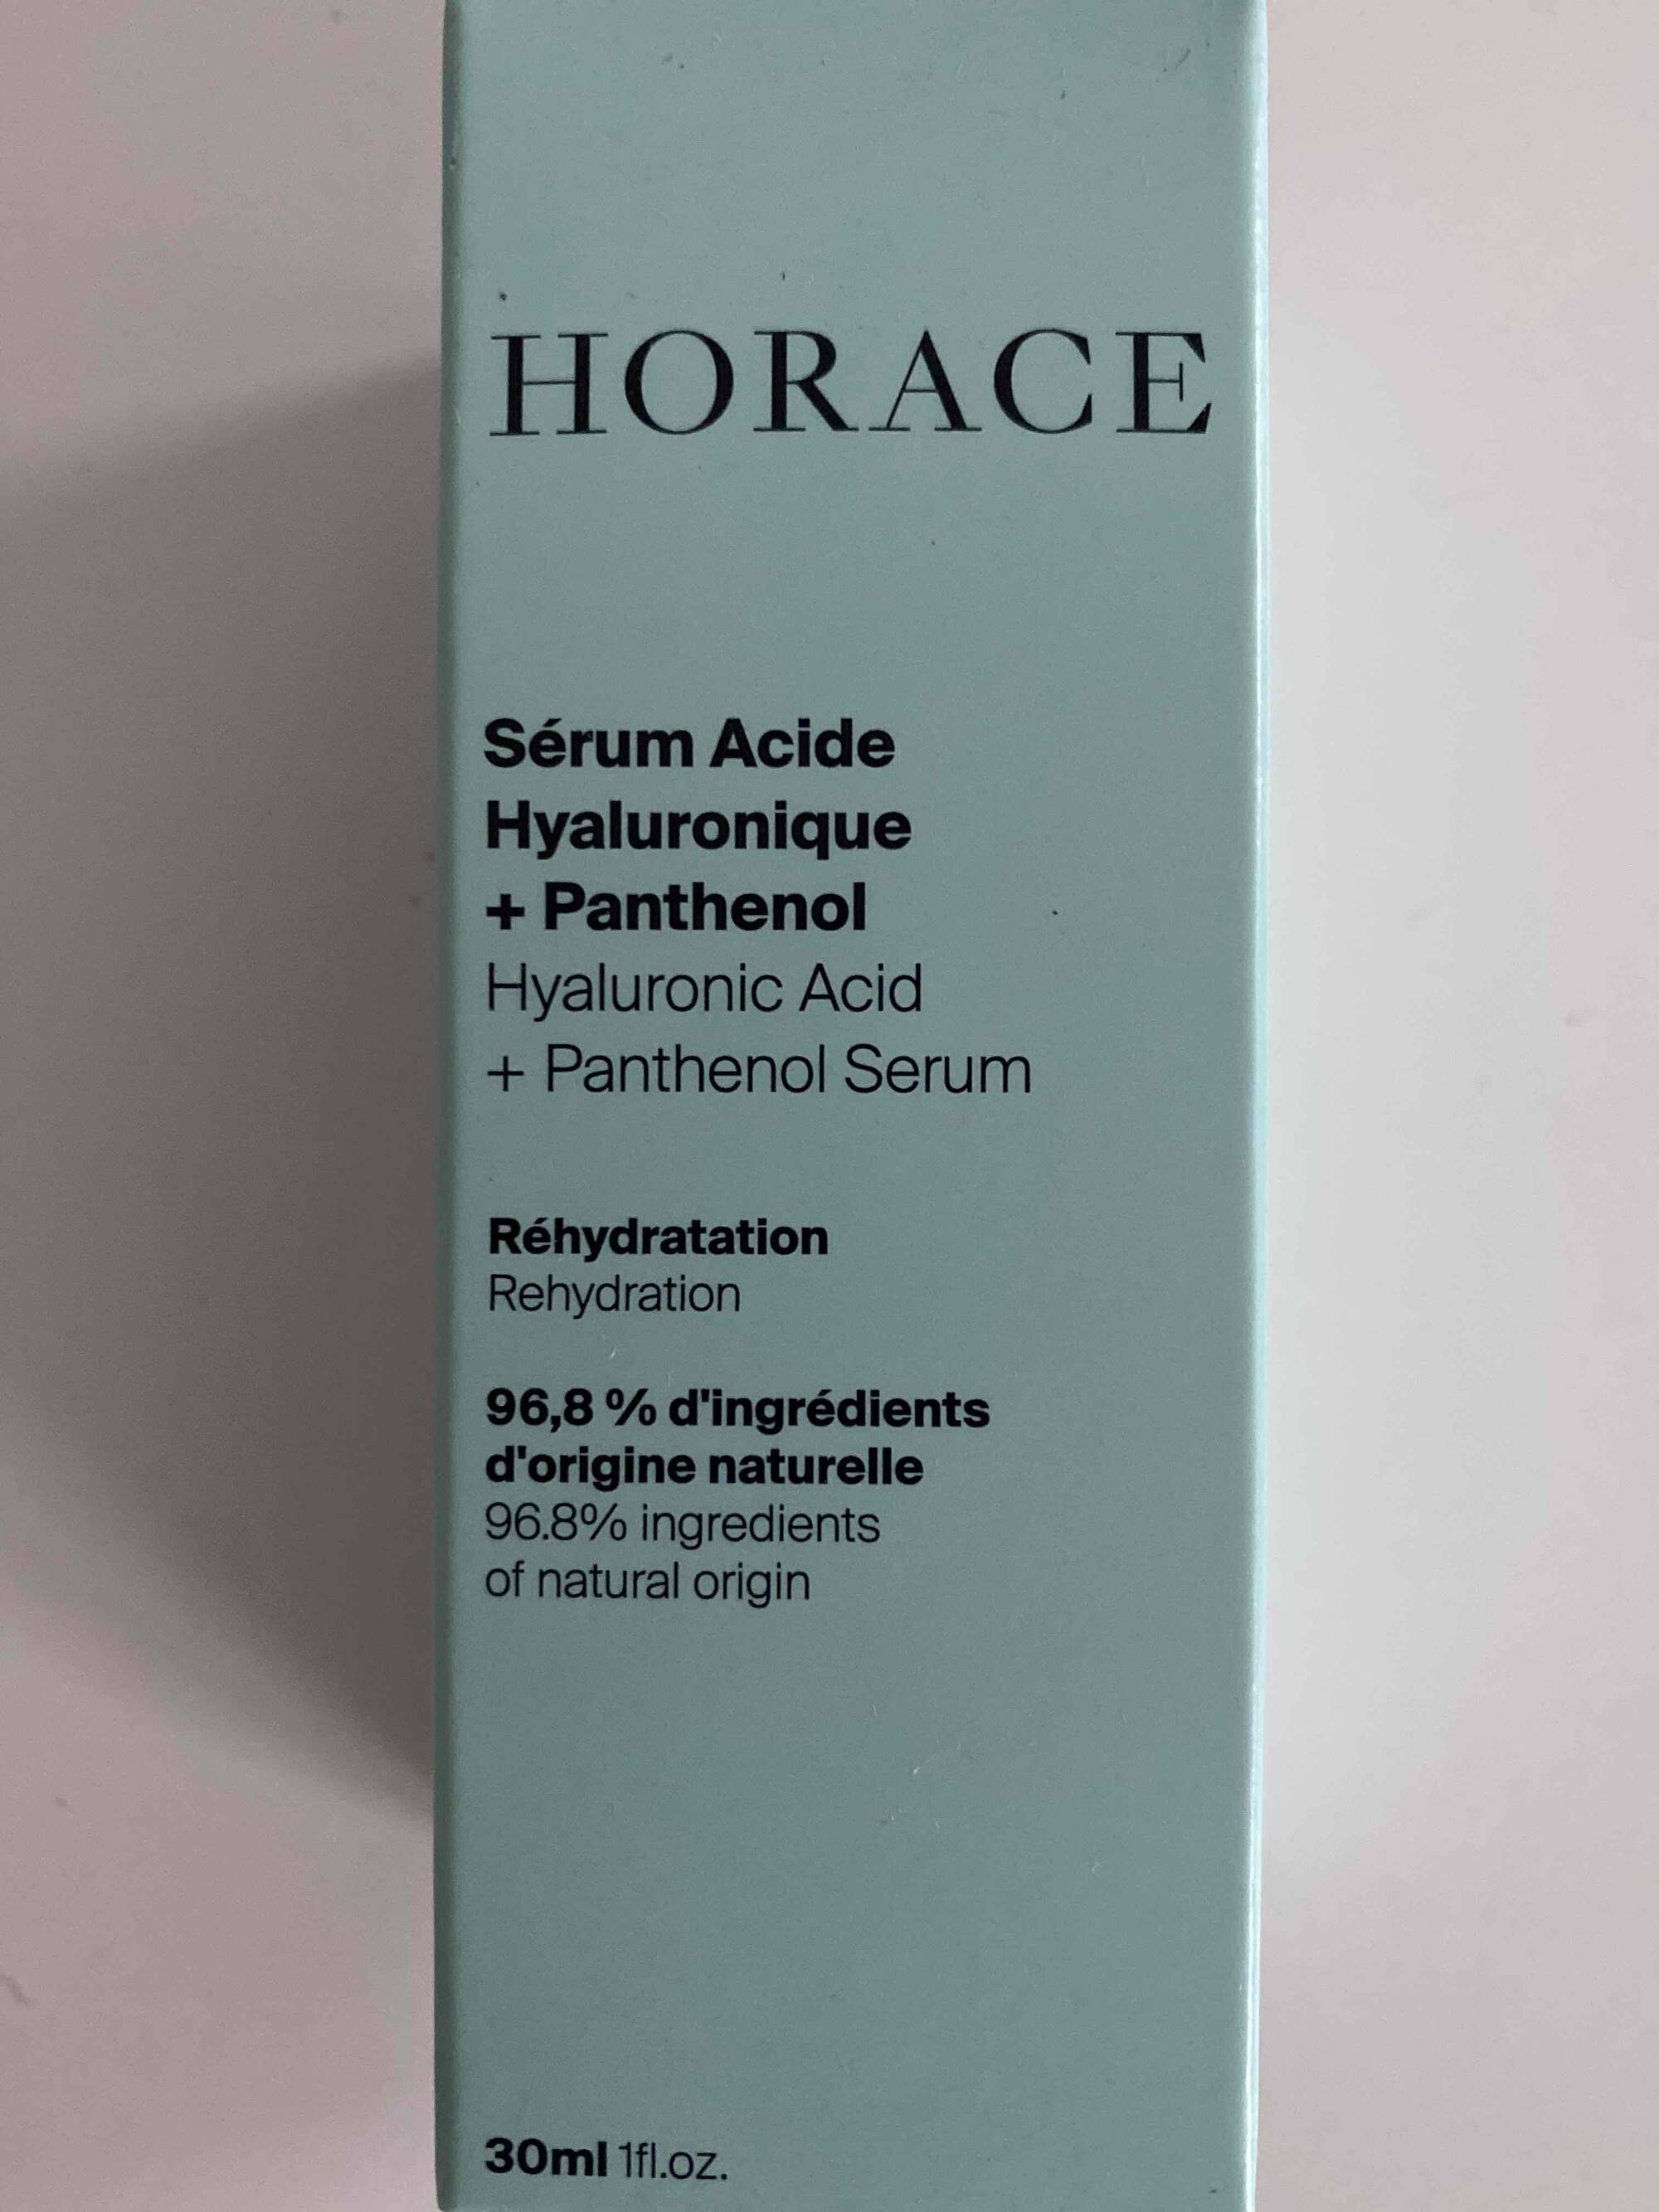 HORACE - Sérum acide Hyaluronique + Panthenol